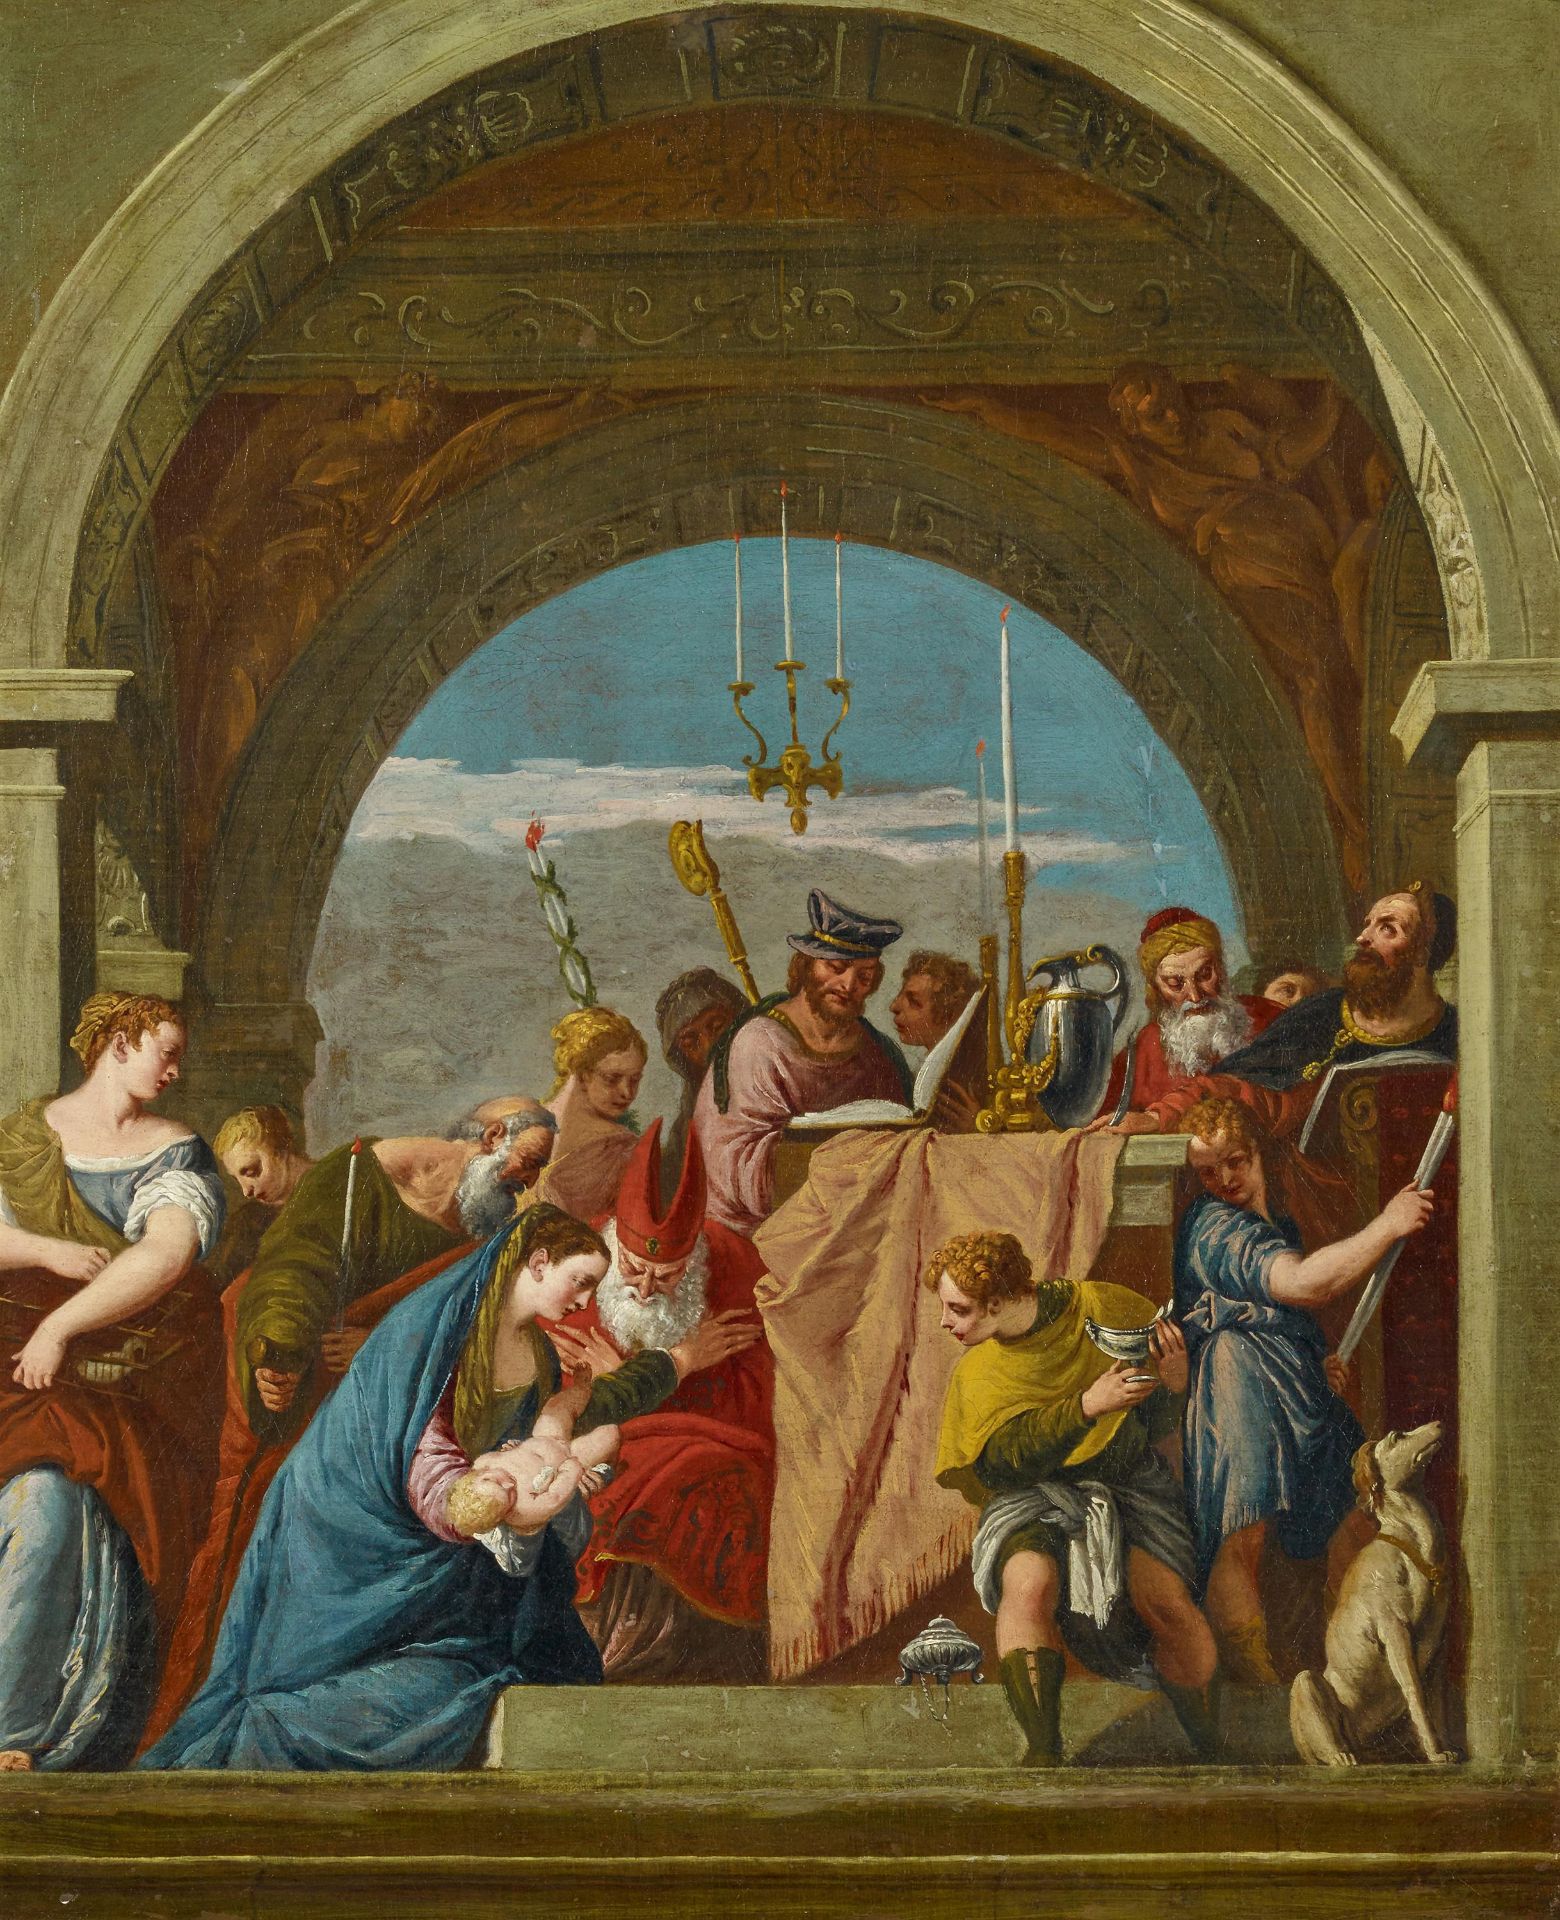 Italienischer Meister - 2. H. 18. Jh.Die Darstellung Christi im Tempel. Nach dem Vorbild von Paolo